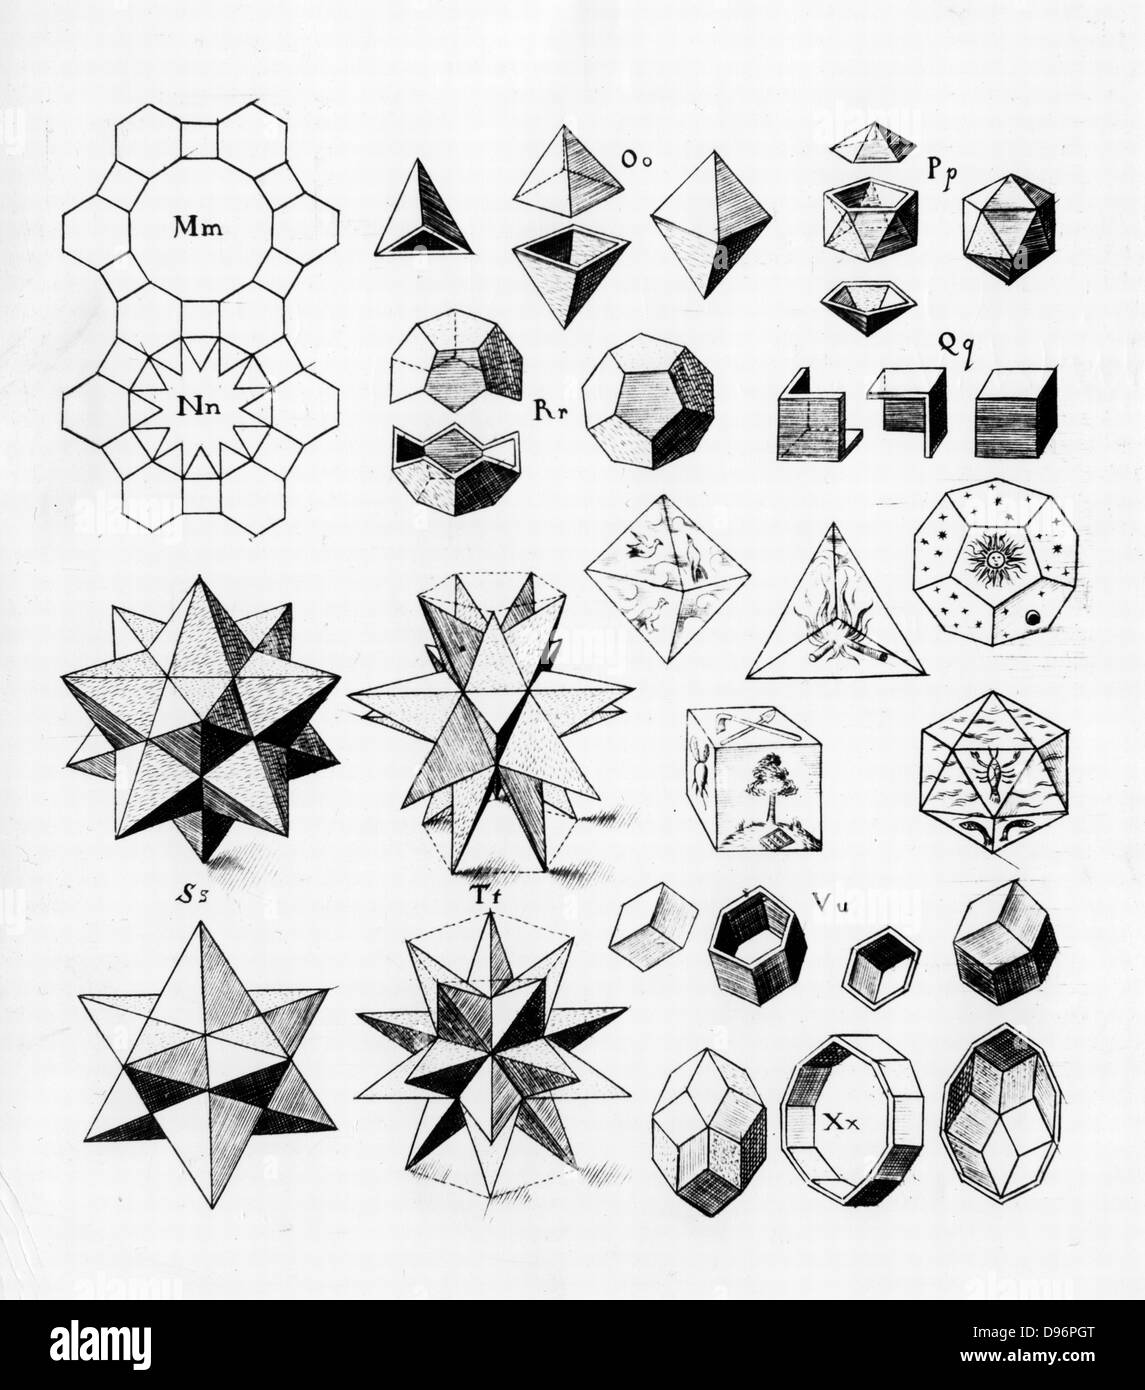 Regolare i solidi geometrici di vari tipi, 1619. In centro a destra sono i solidi geometrici per gli elementi di Terra, Aria, Fuoco, Acqua e il quinto elemento celeste. Da 'Harmonices Mundi', da Johannes Kepler. (Linz, 1619). Incisione. Foto Stock